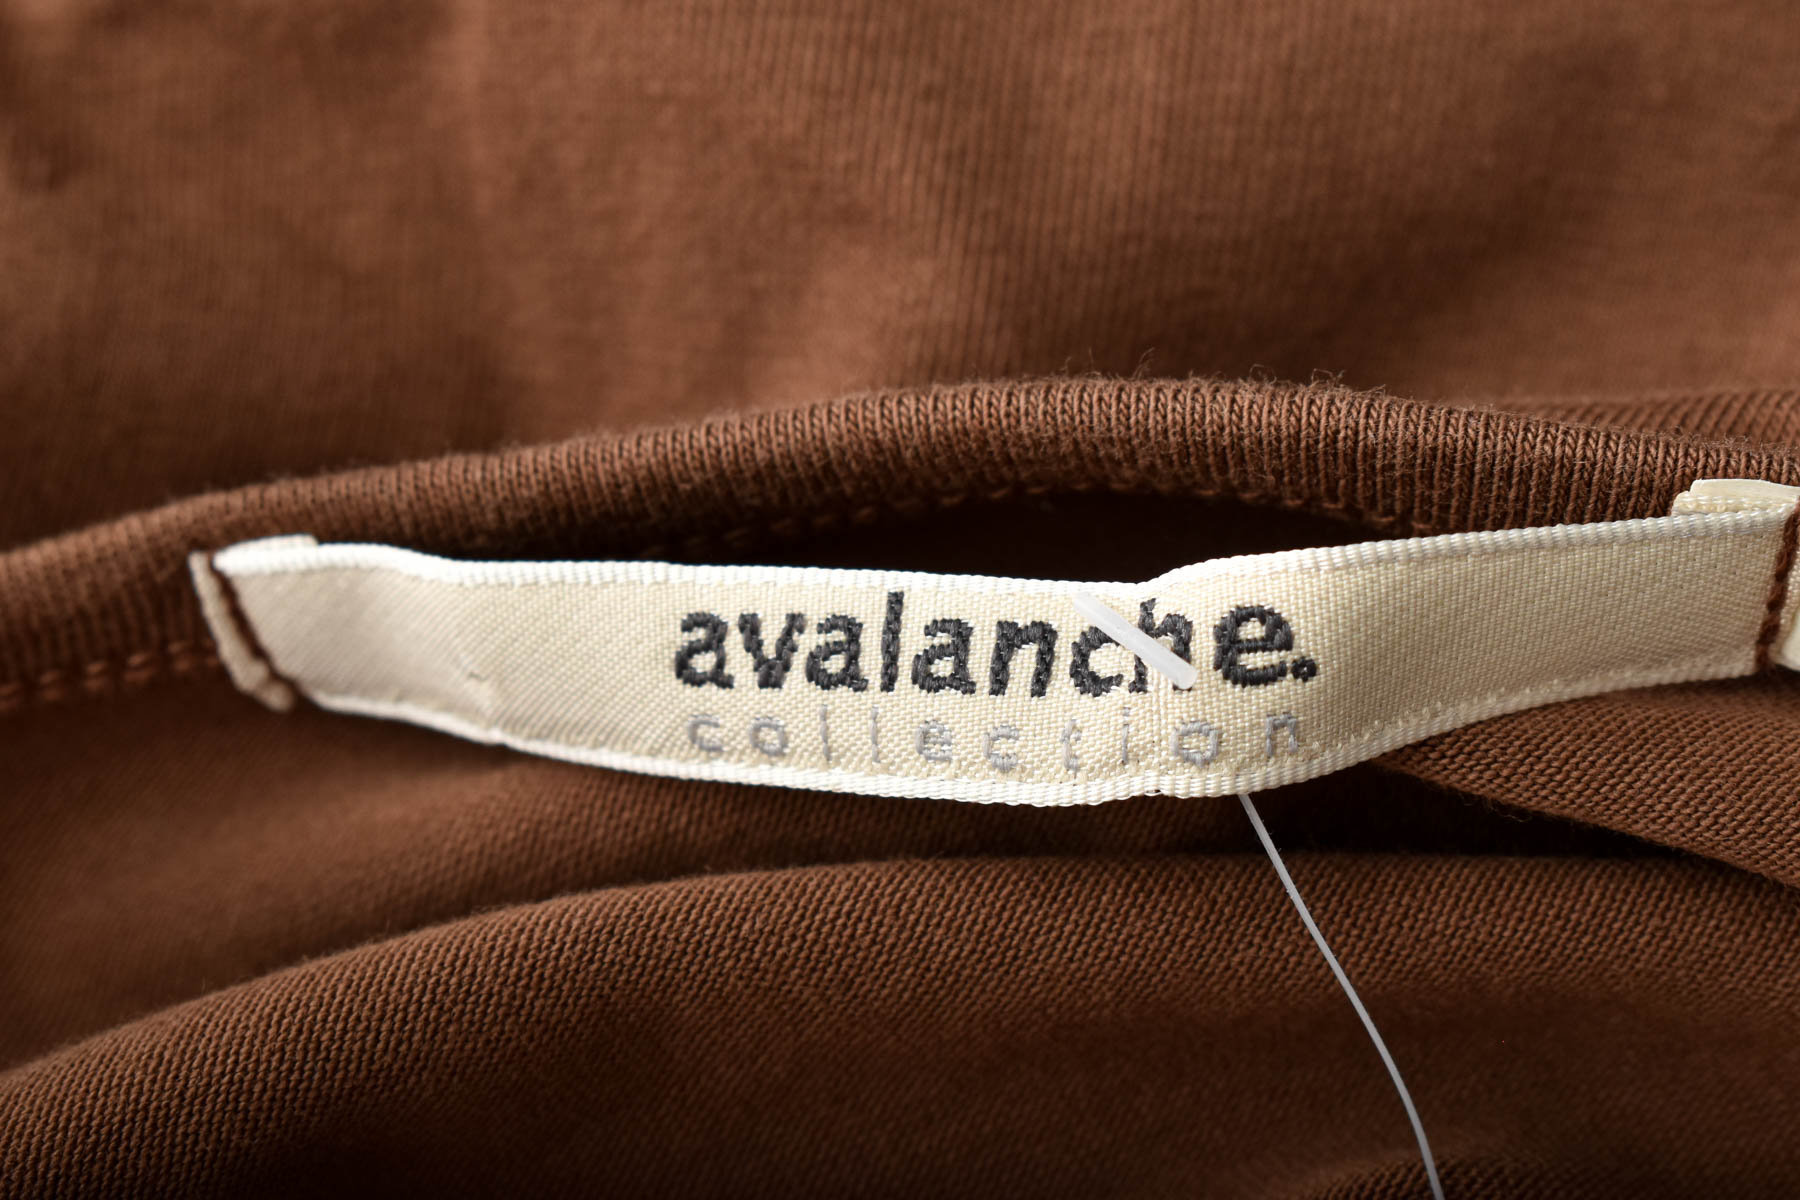 Bluza de damă - Avalanche - 2